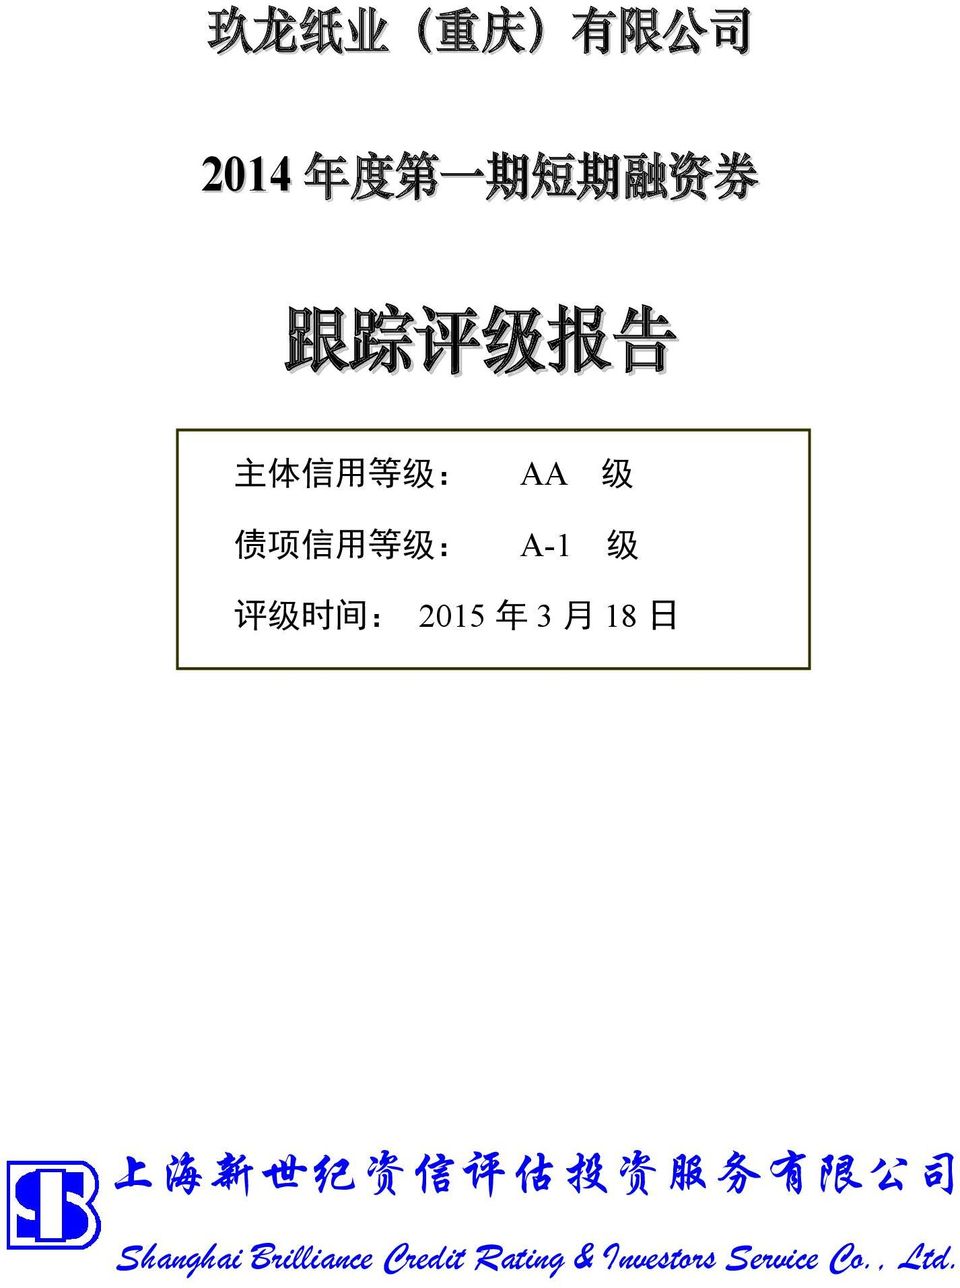 2015 年 3 月 18 日 上 海 新 世 纪 资 信 评 估 投 资 服 务 有 限 公 司